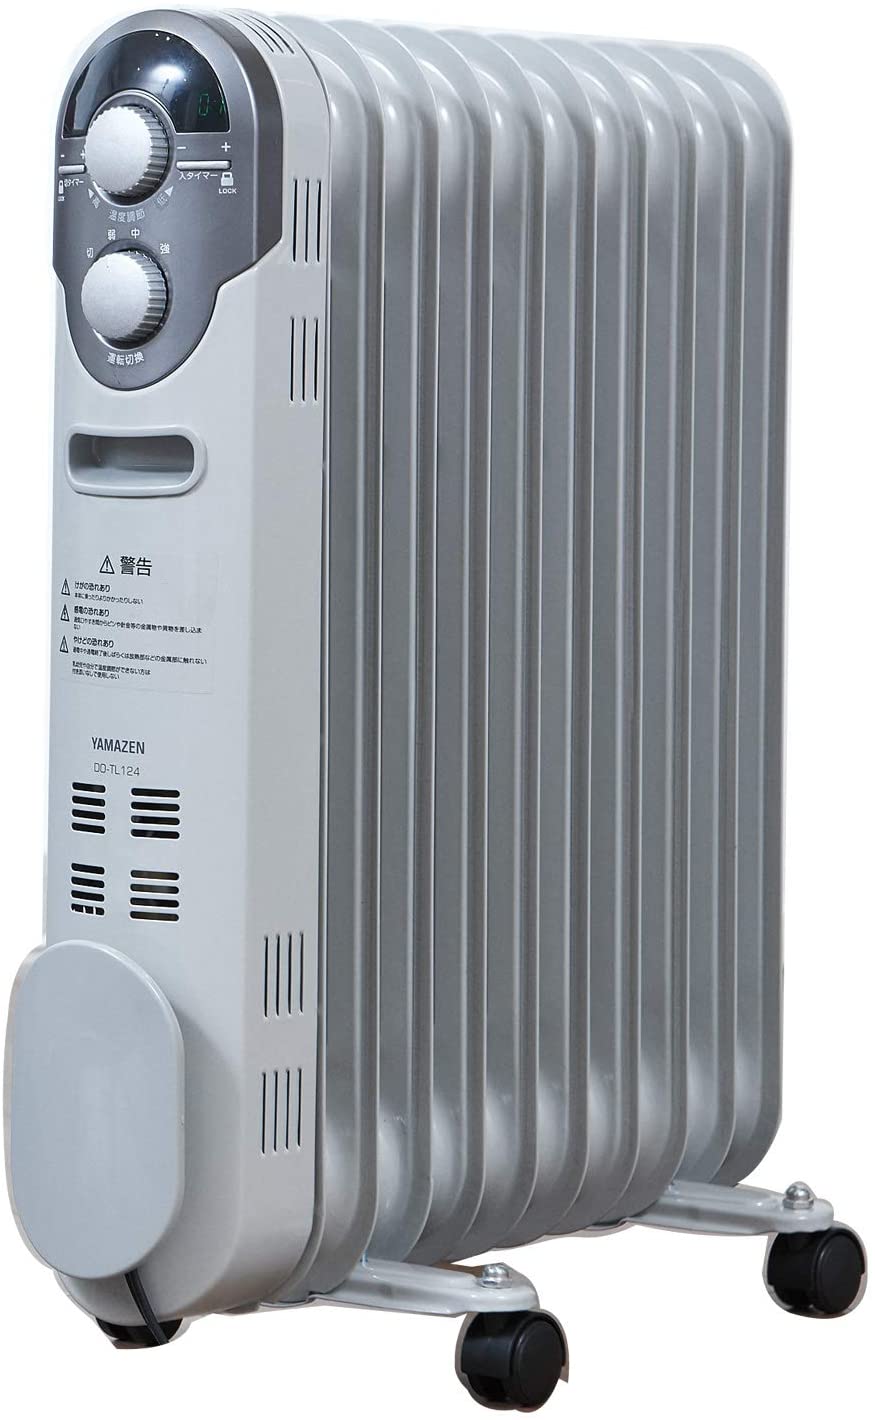 山善オイルヒーター(1200/700/500W 3段階切替式)(温度調節機能付)(24時間入切タイマー付) ホワイト DO-TL124(W)